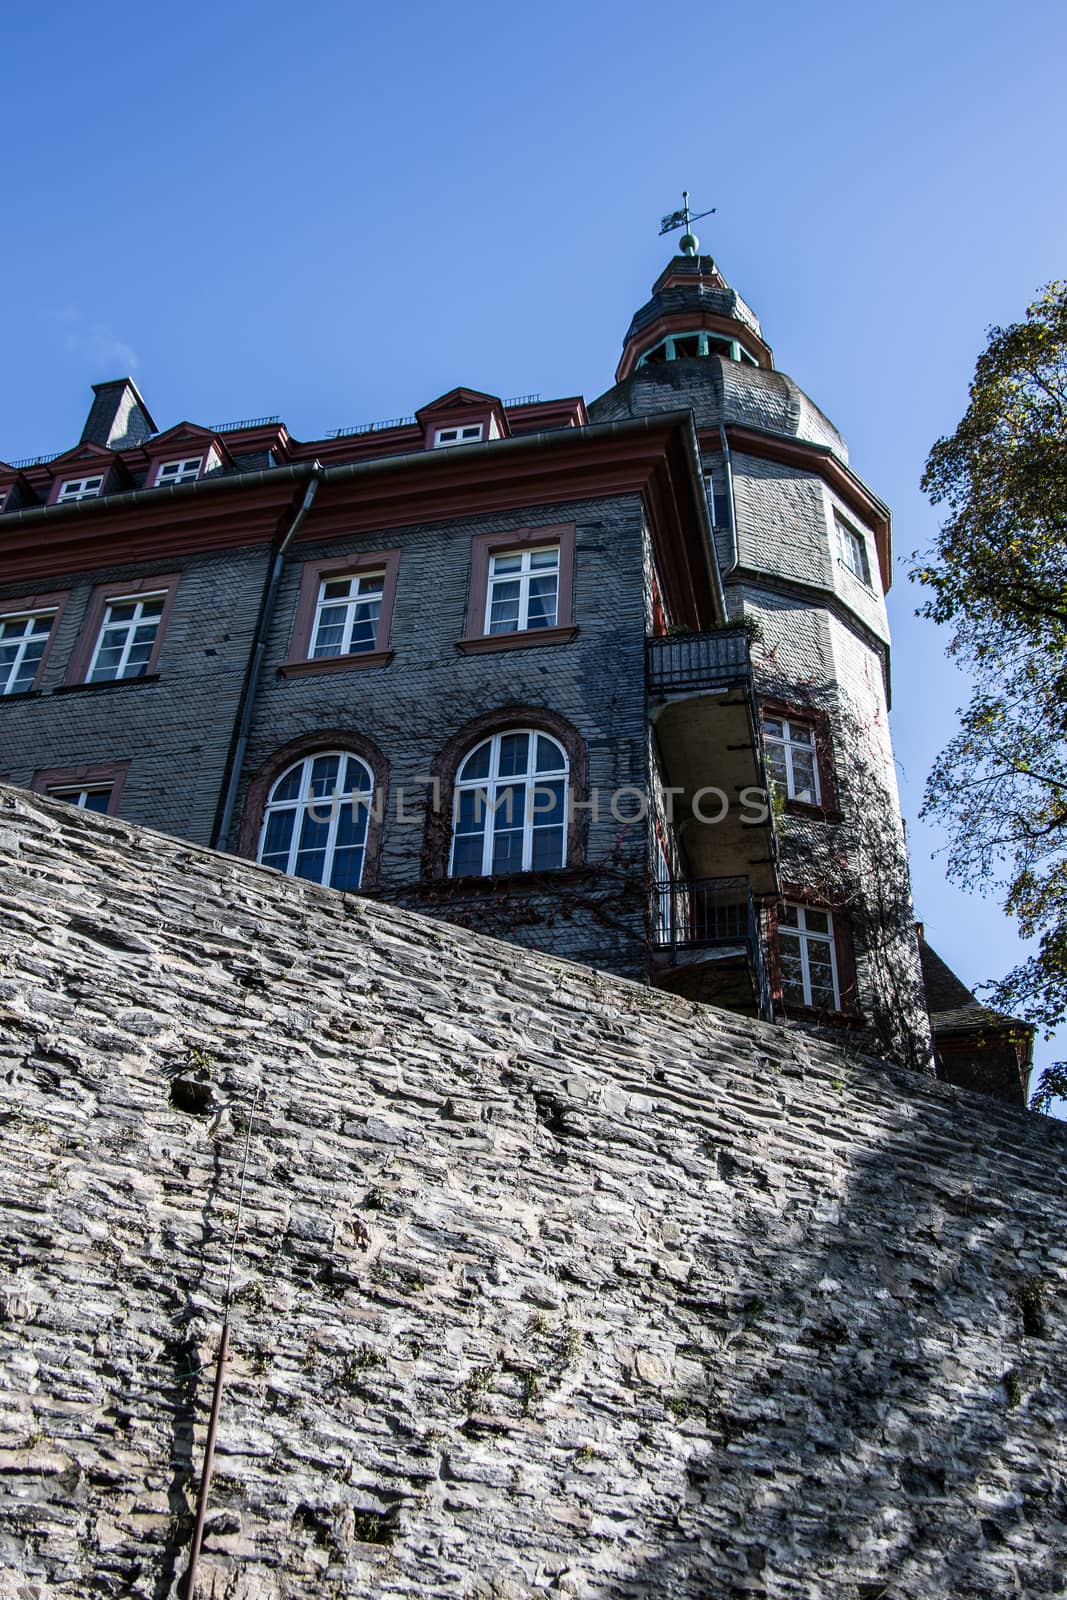 Siegen-Wittgenstein Castle in Bad Berleburg by Dr-Lange